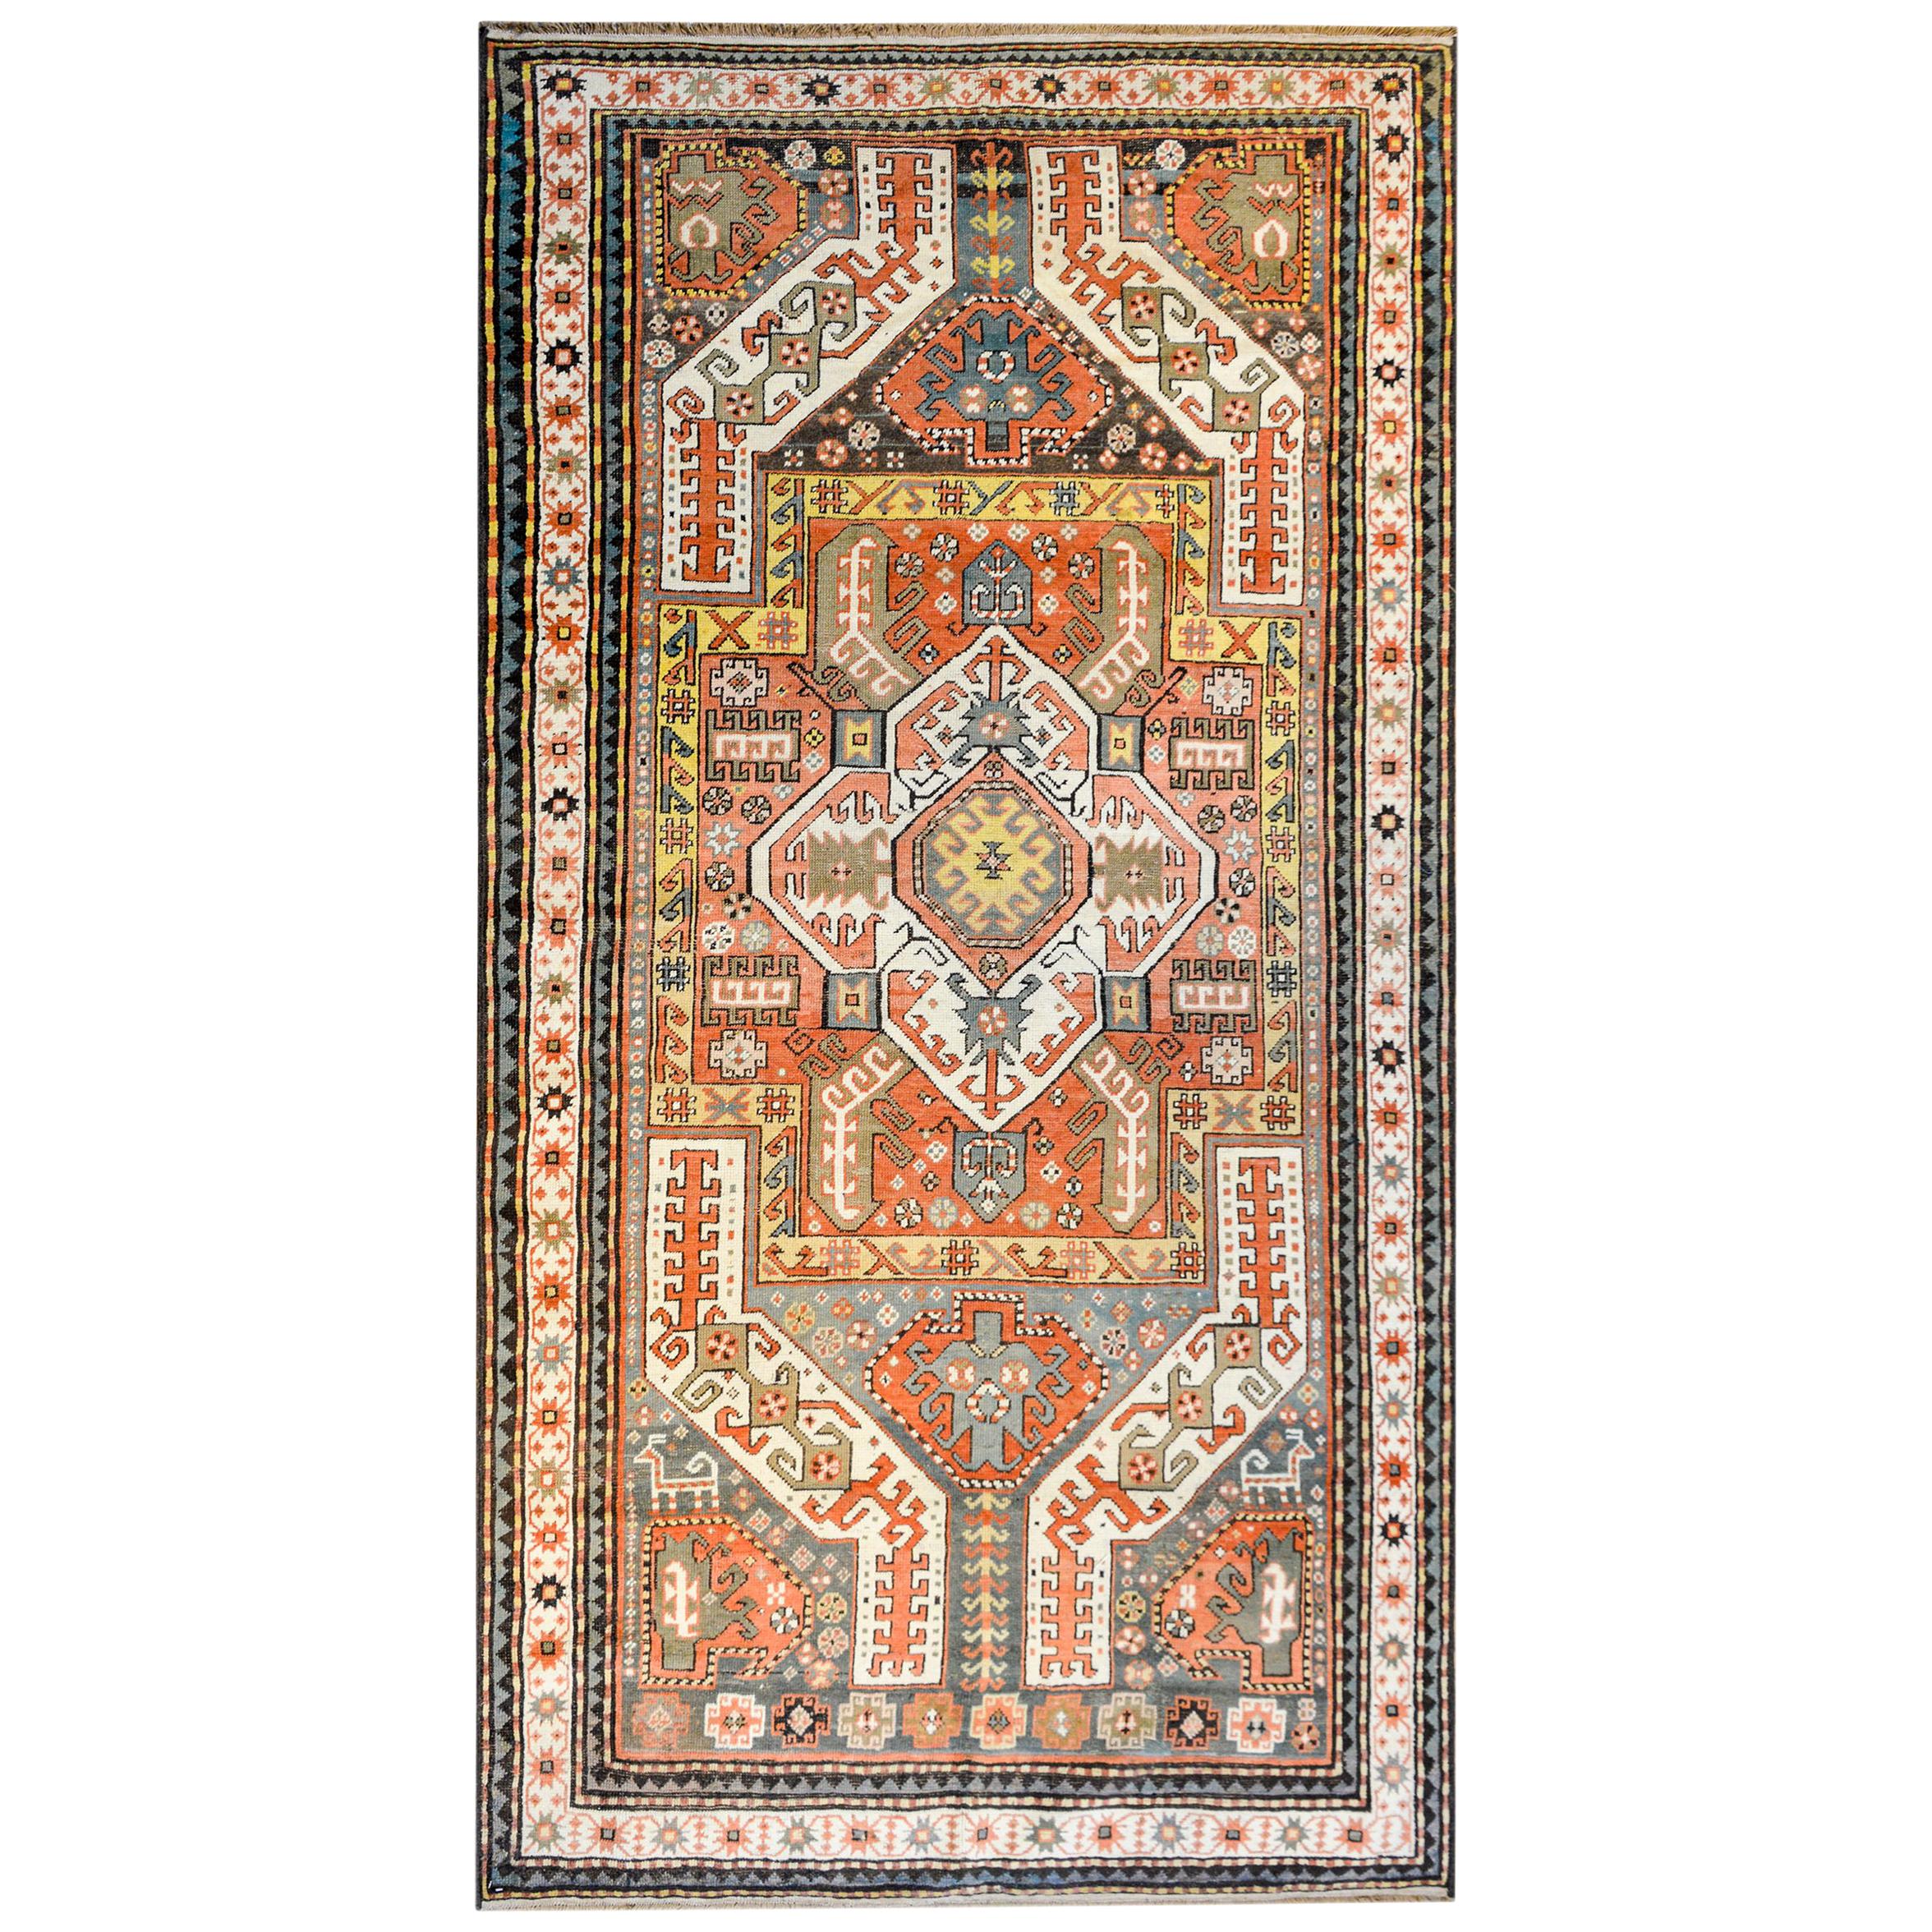 Außergewöhnlicher kaukasischer Teppich aus dem frühen 20. Jahrhundert